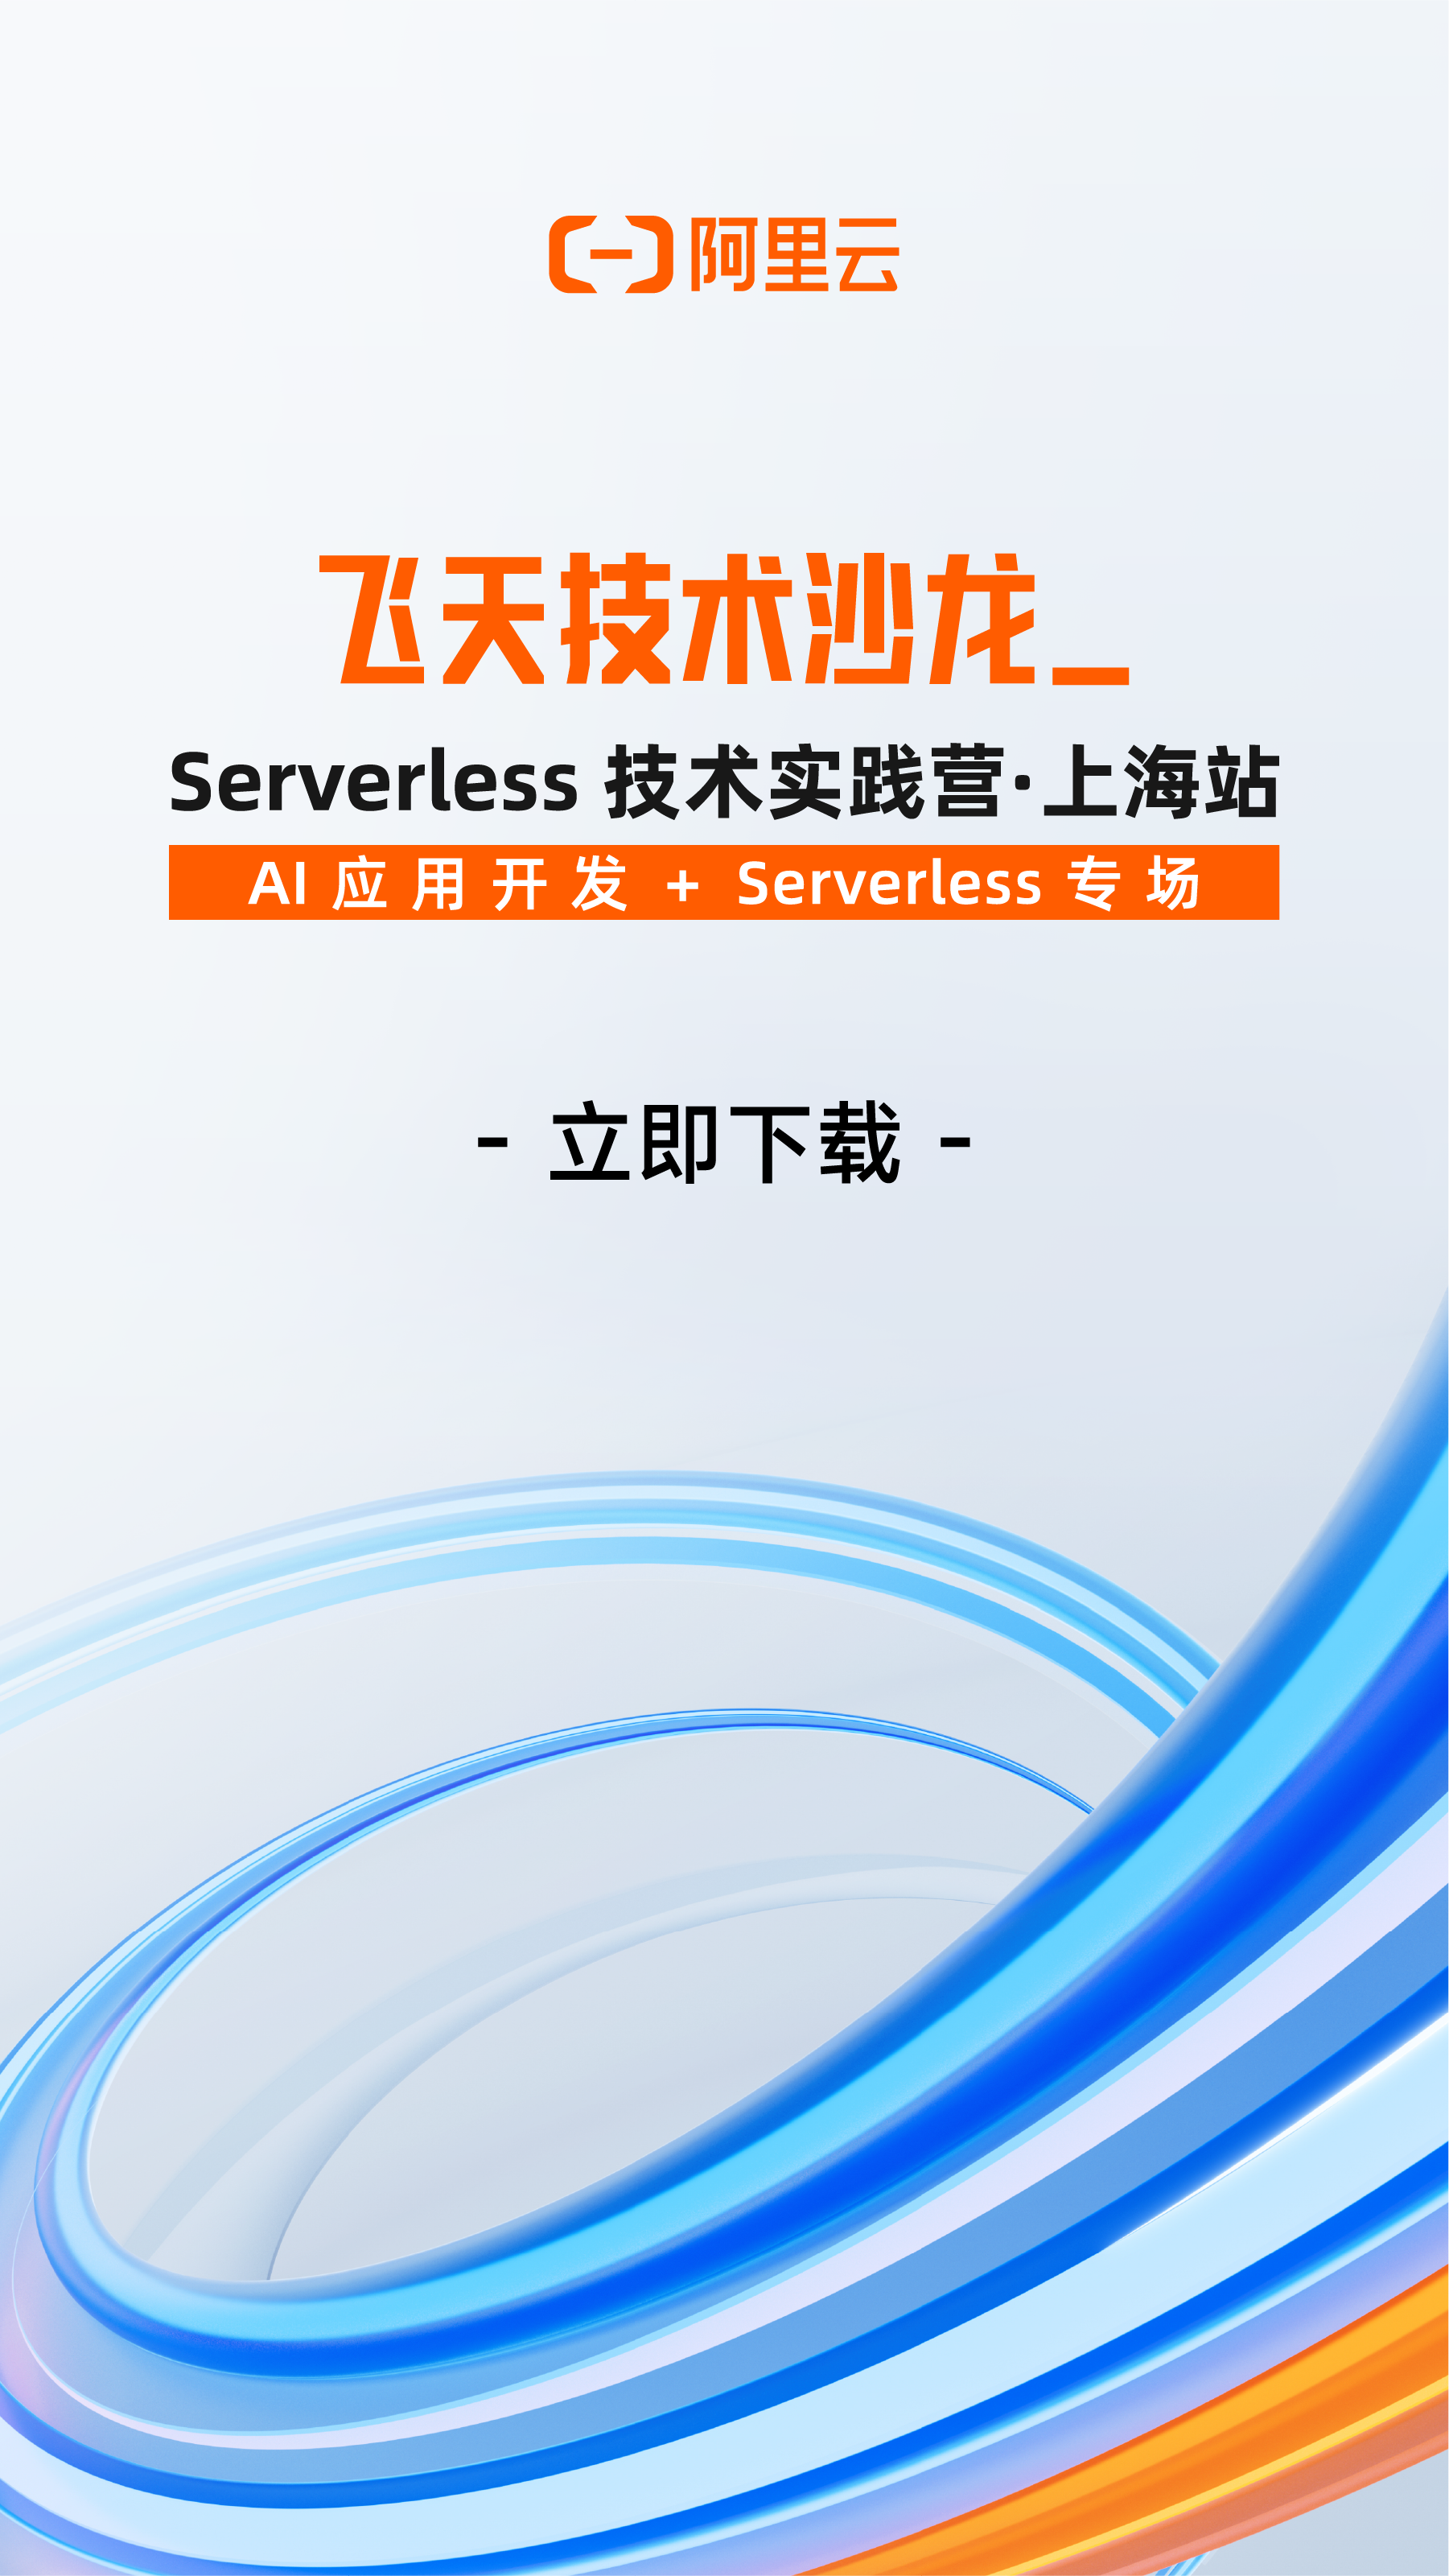 飞天技术沙龙Serverless技术实践营·上海站 PPT 